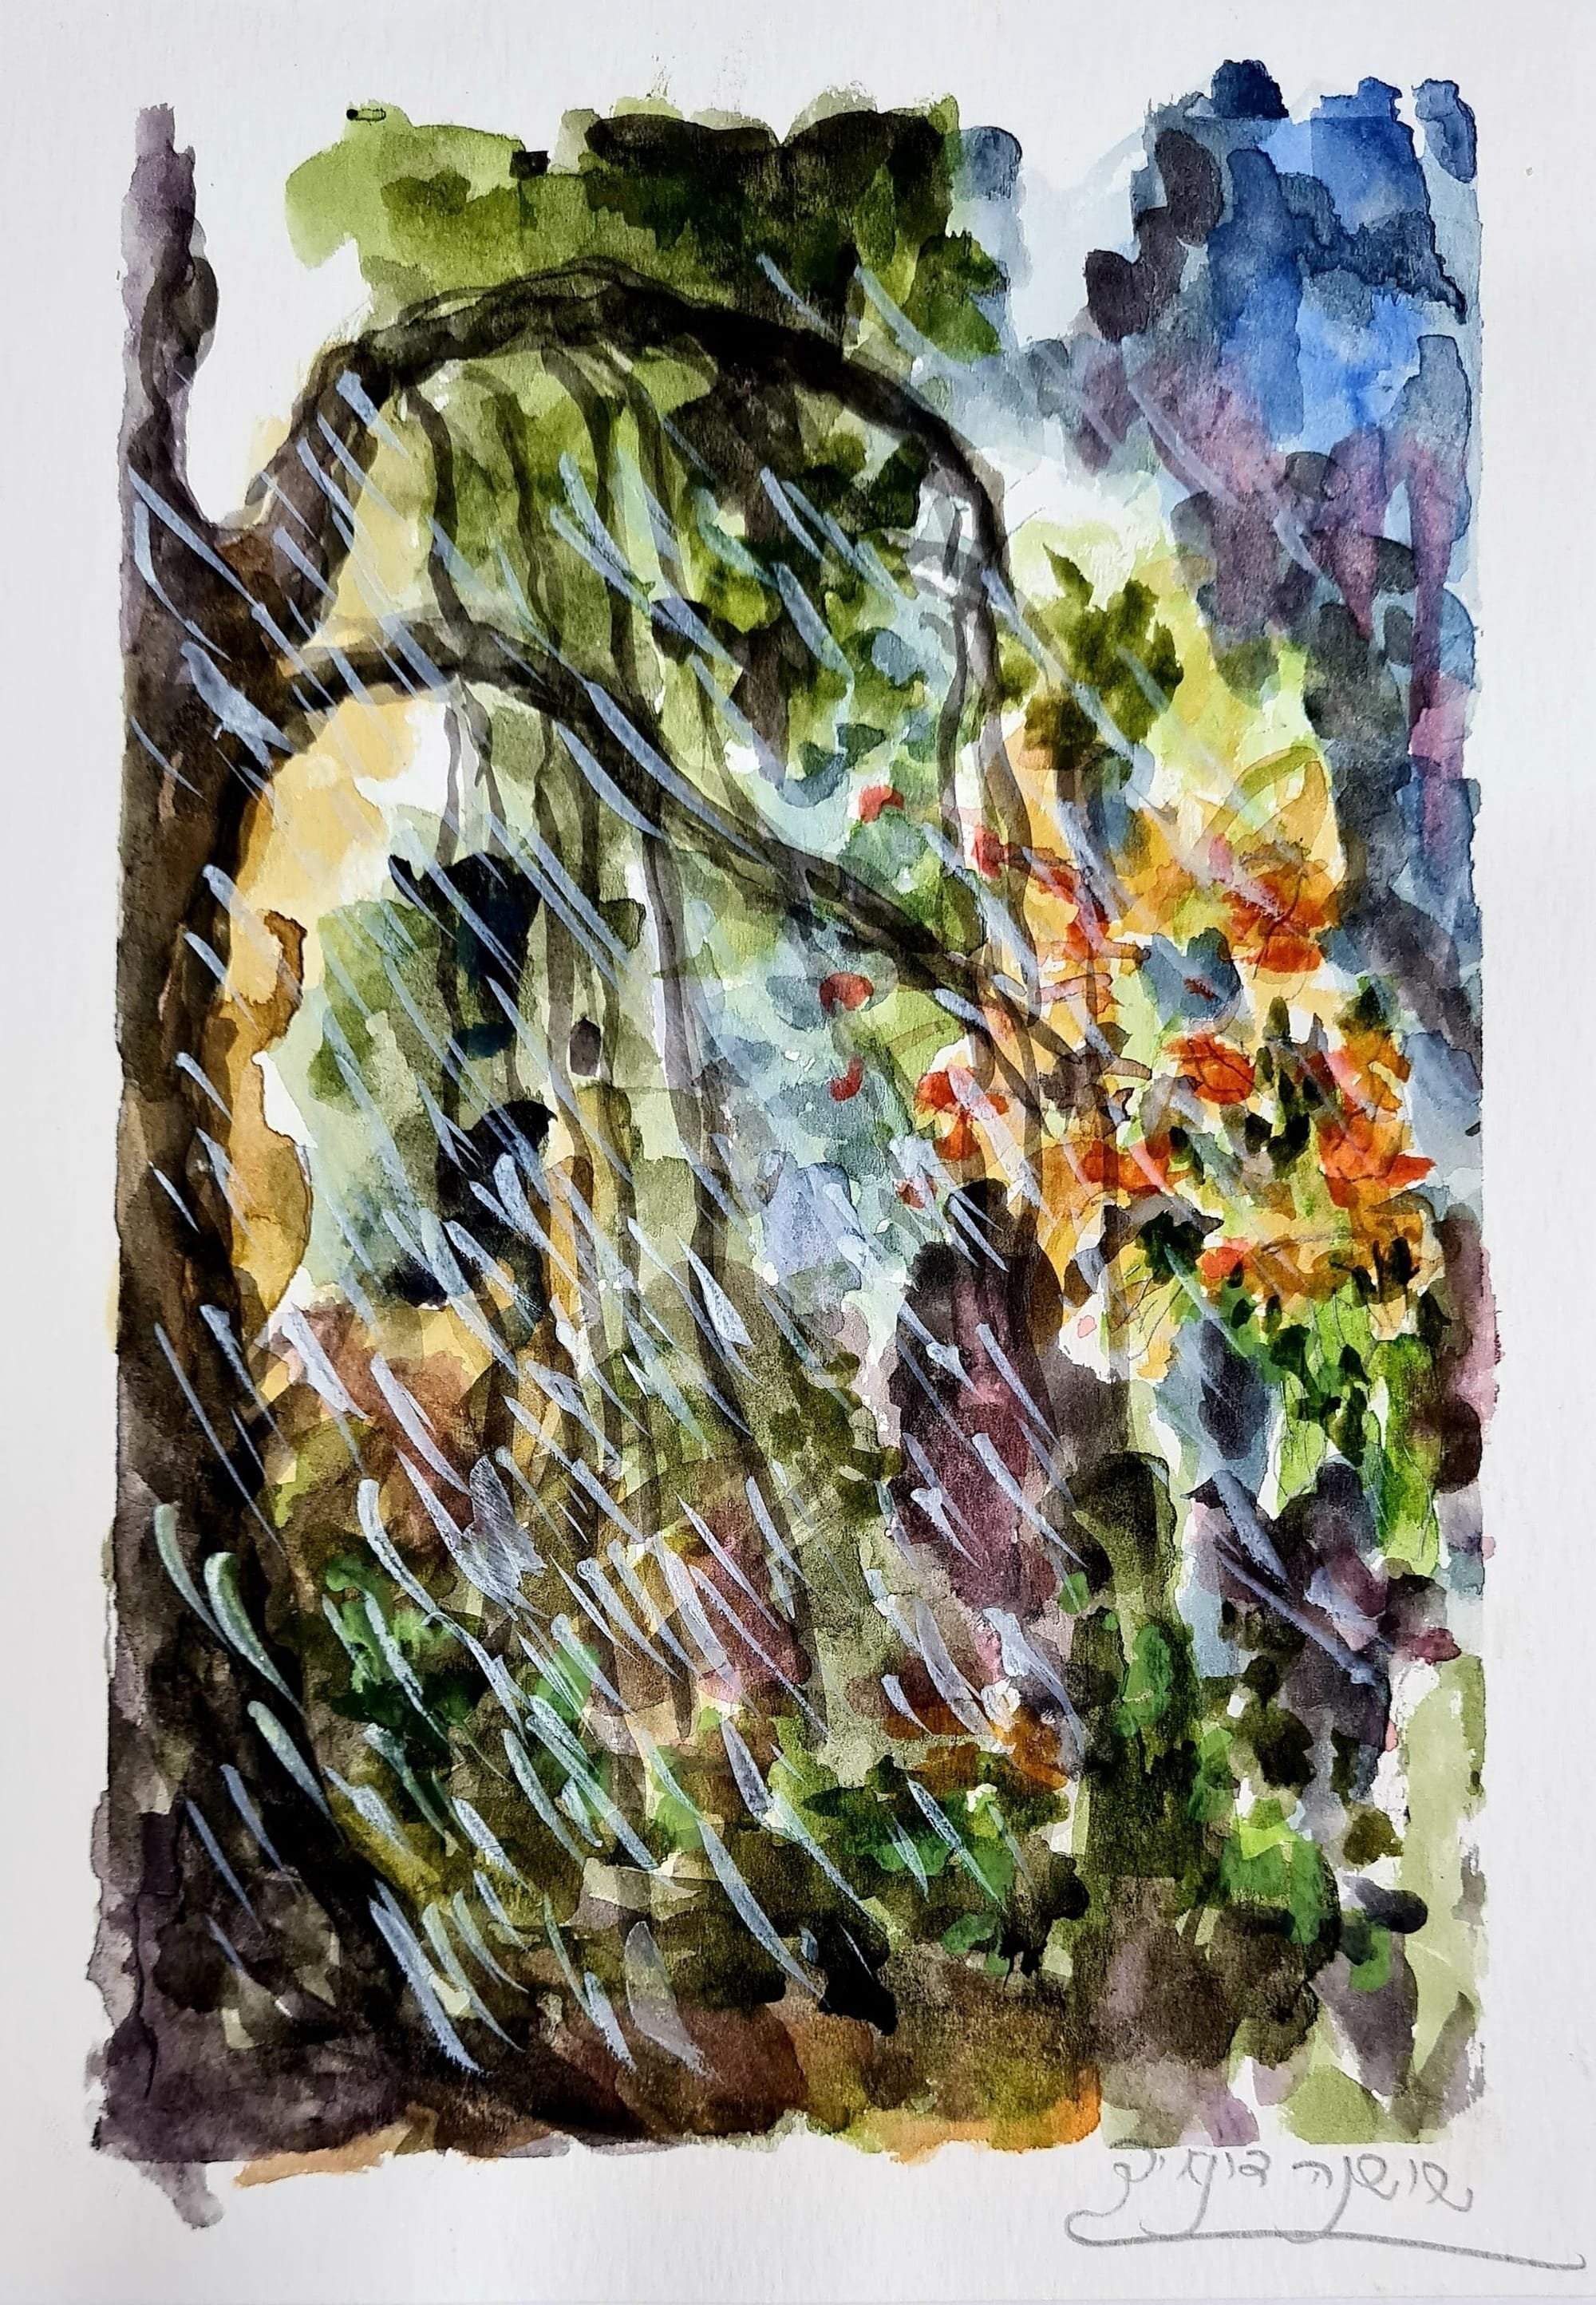 ציור מס. 45 - "יער בגשם"